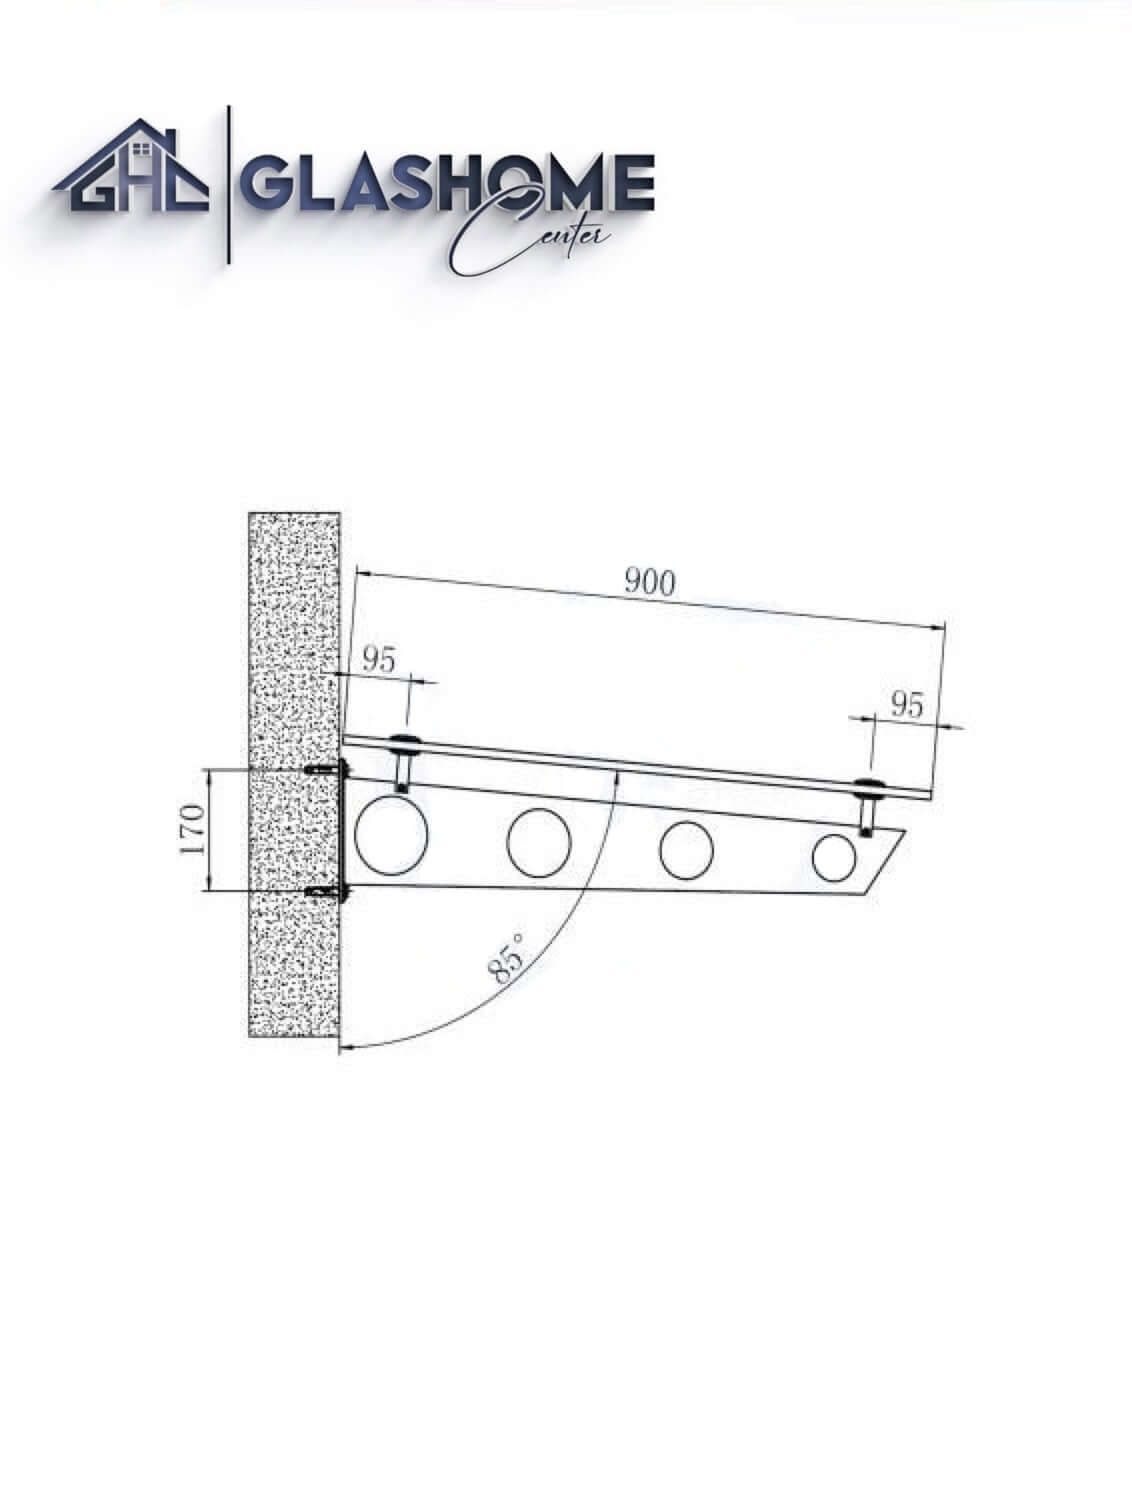 GlasHomeCenter - Glasvordach - Milchglas - 250x90cm - 13,1mm VSG - incl. 3 varianti Edelstahlhalterungen nere "Stoccolma"